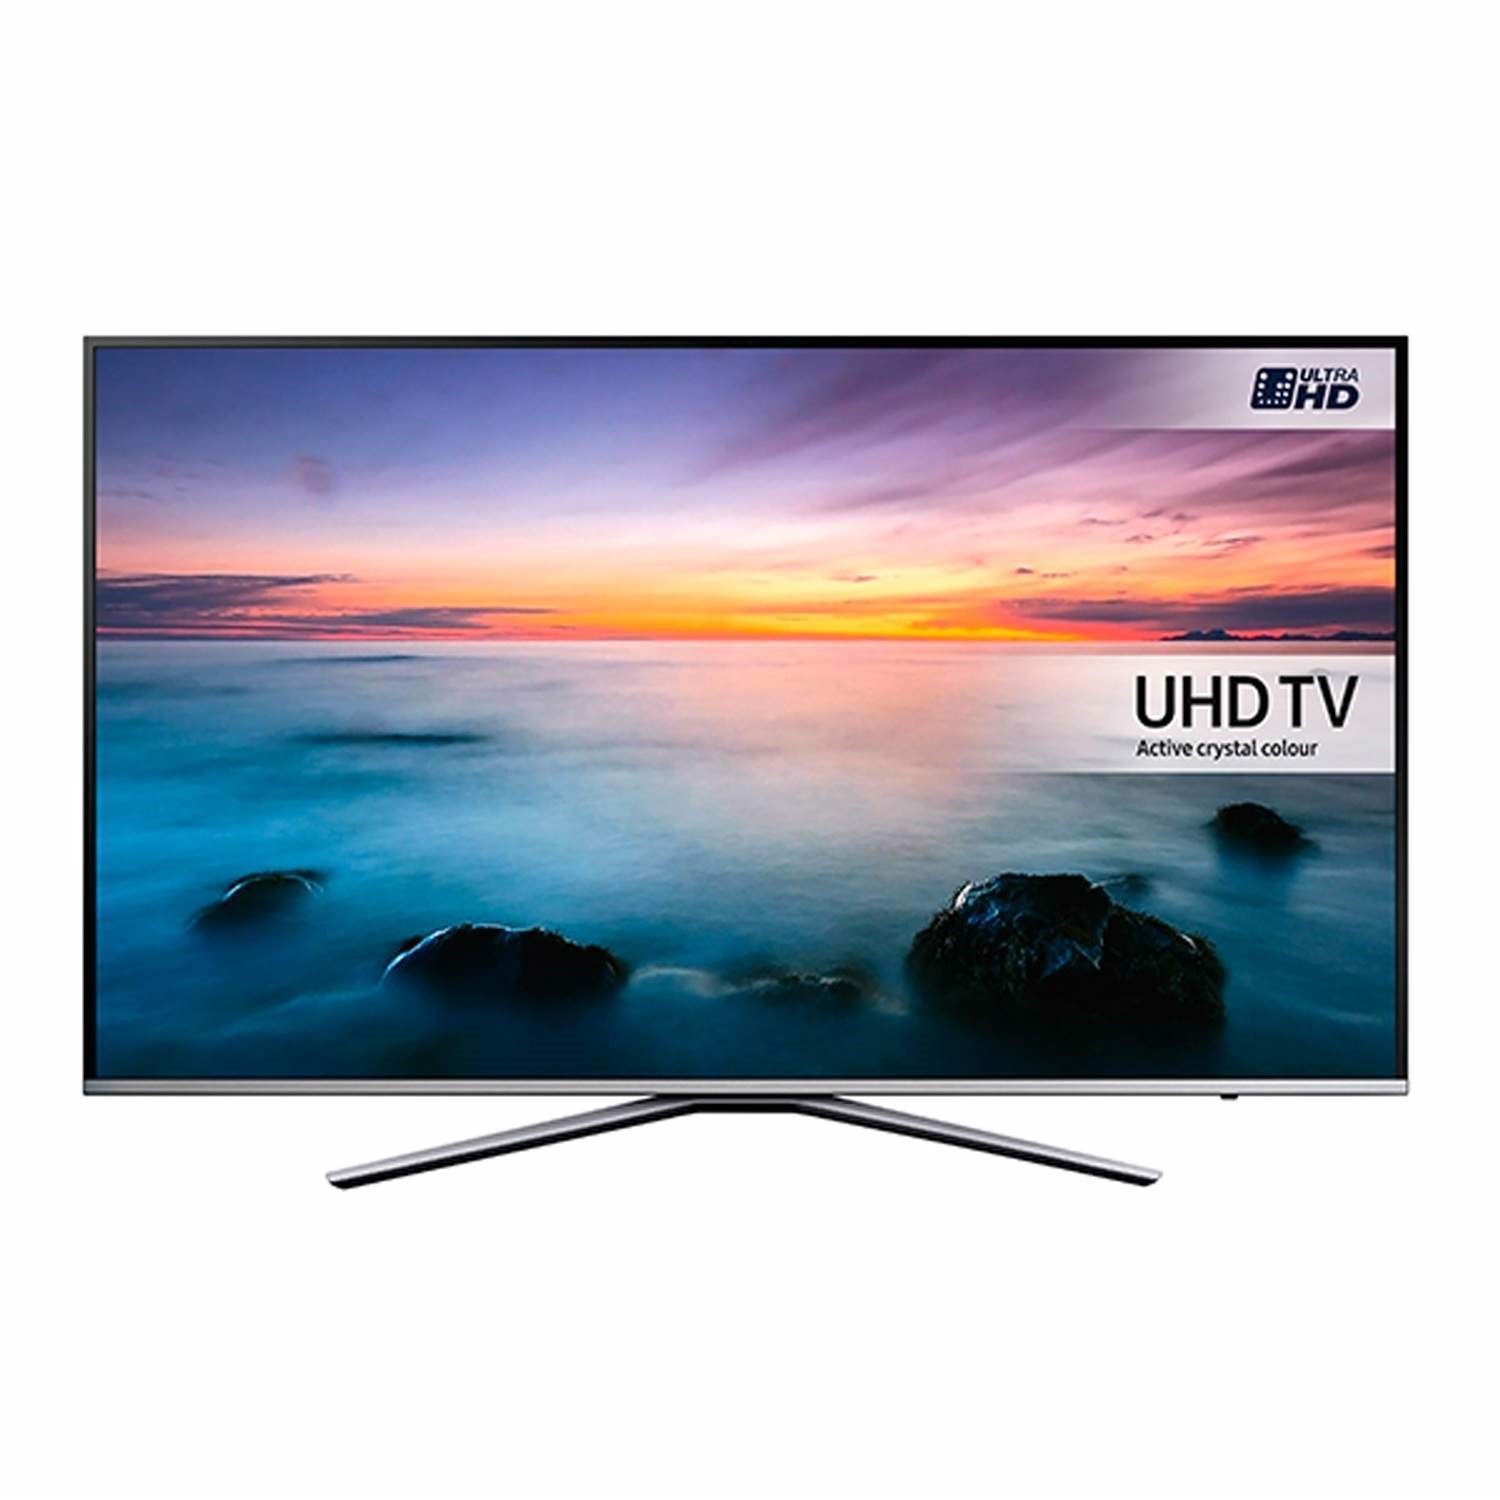 Озон телевизоры 65. Samsung ue49ku6400u. Samsung телевизор UHD TV 40 дюймов. Телевизор Samsung 35 дюймов Smart TV. Samsung UE 43 K 6510.